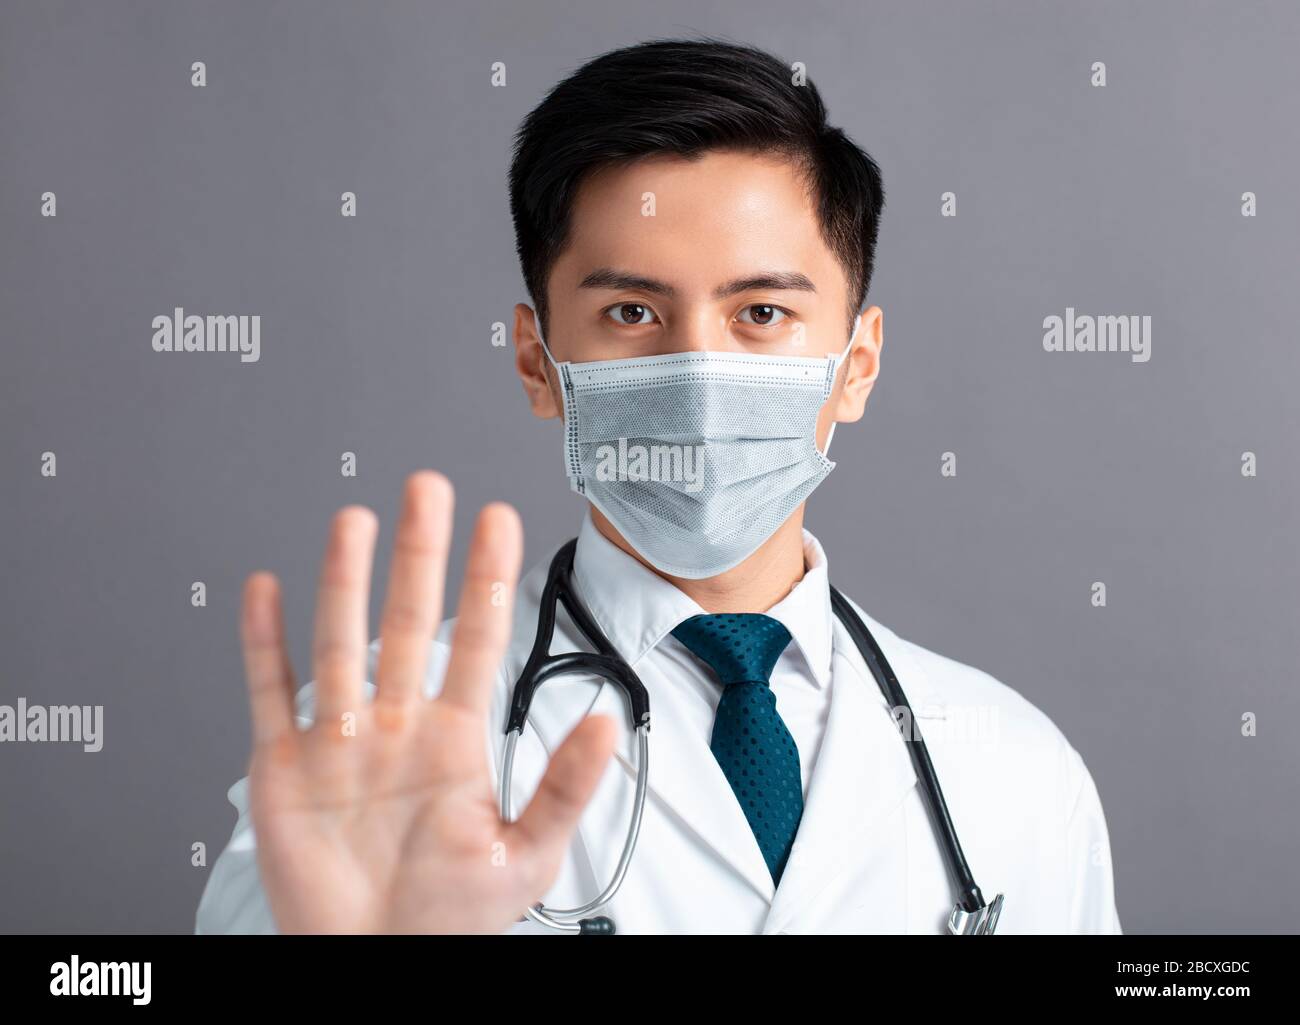 Op. doctor, gesture, warning, half portrait, doctor, surgeon